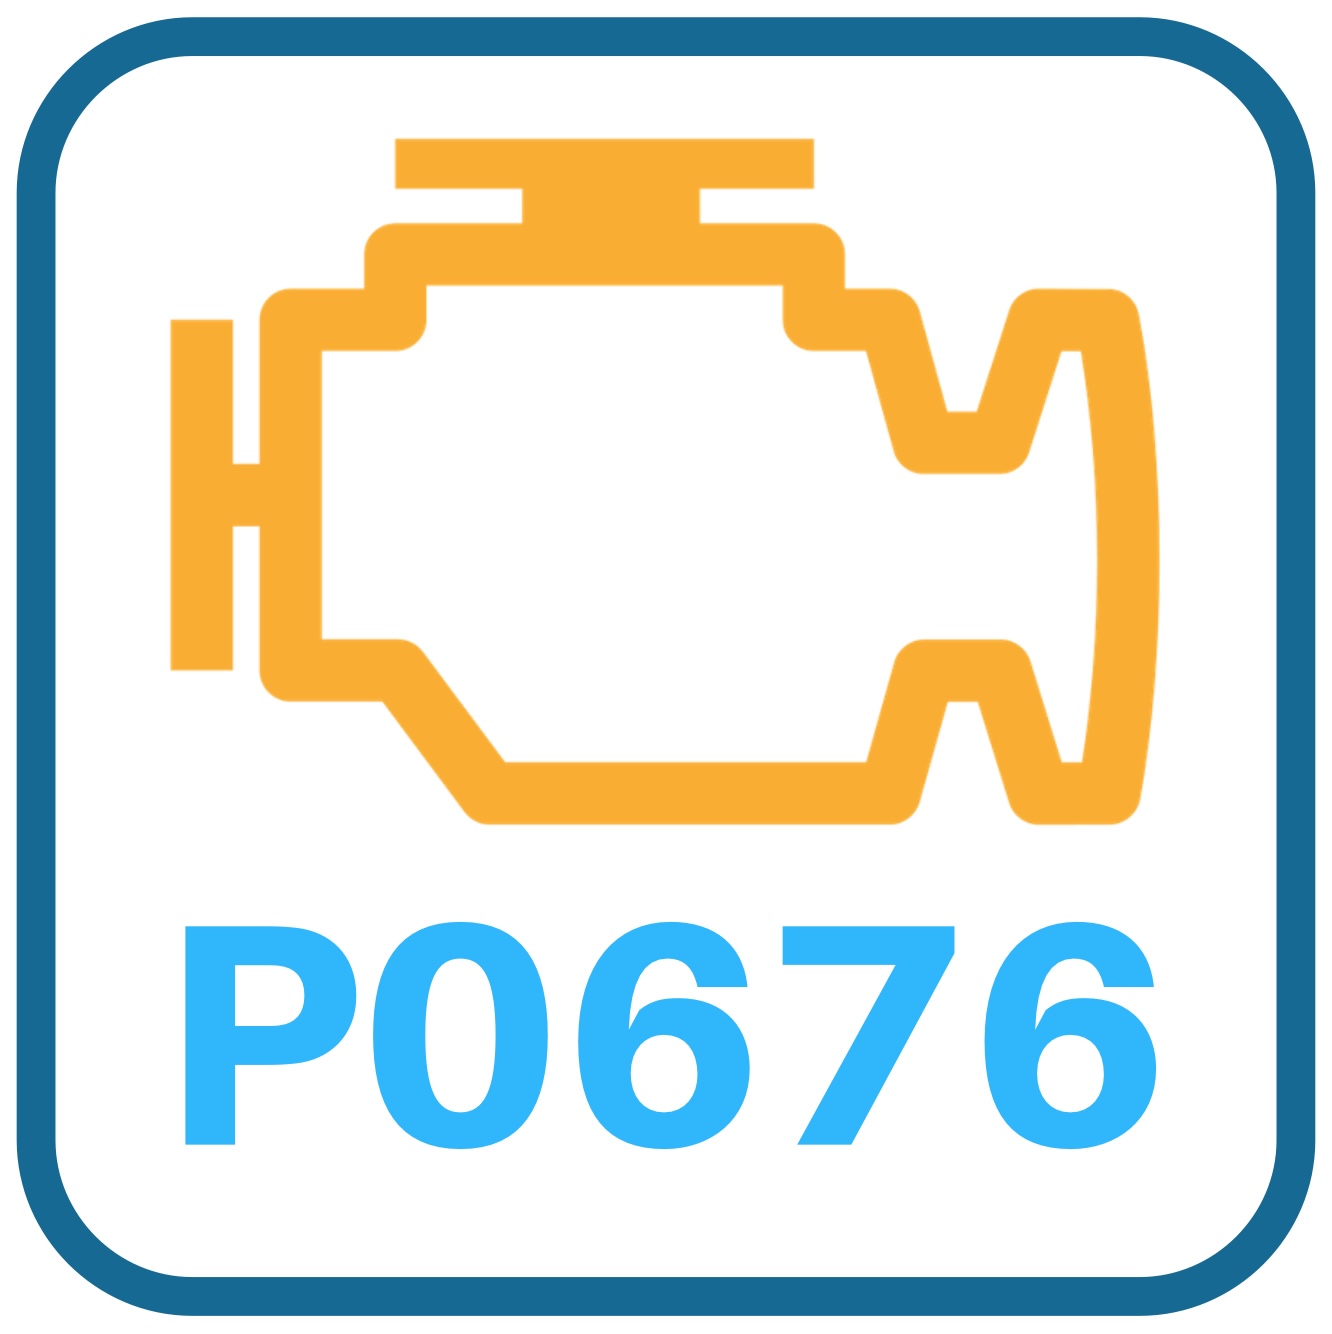 P0676 Significado: Chevy Silverado